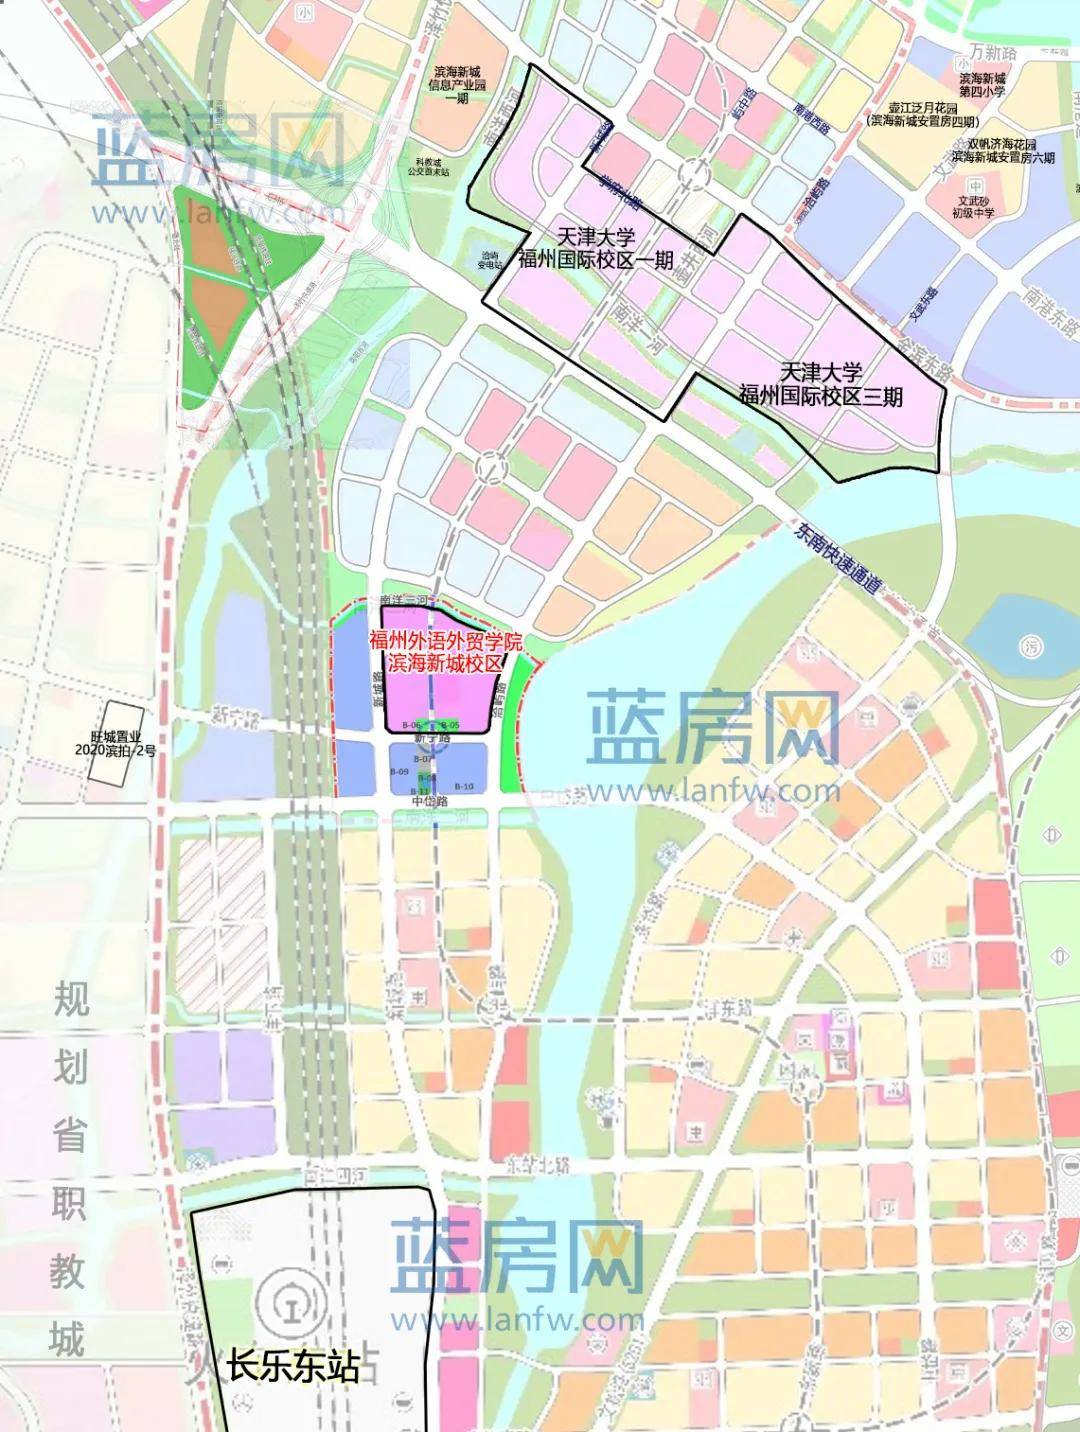 此外,福州滨海新城今年还计划加快推动福建职教城建设,推动征迁交地